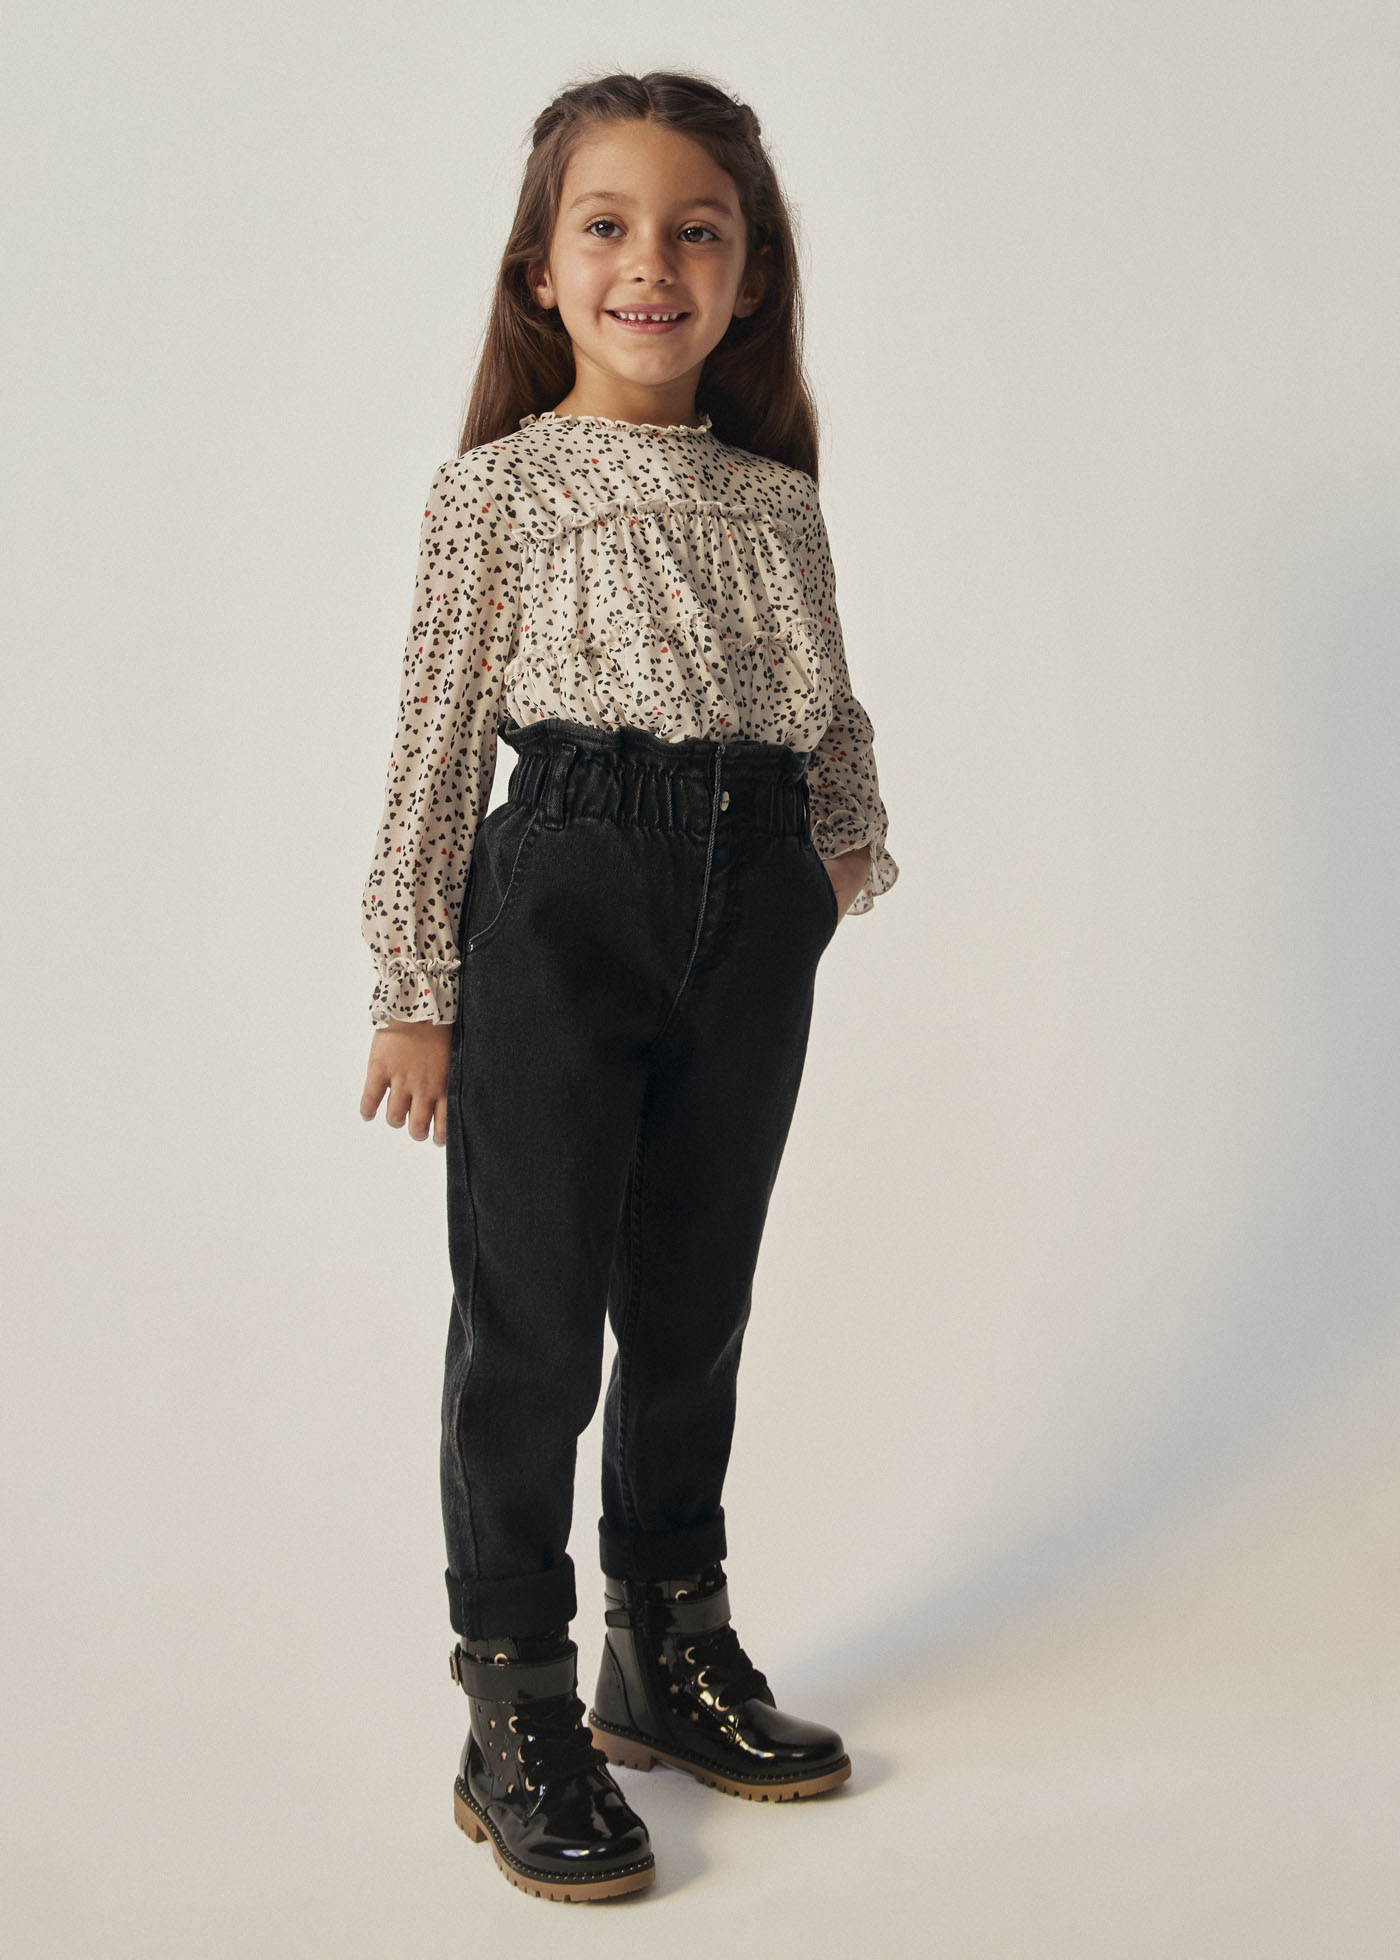 Pantalón slouchy niña – KIDS moda feliz